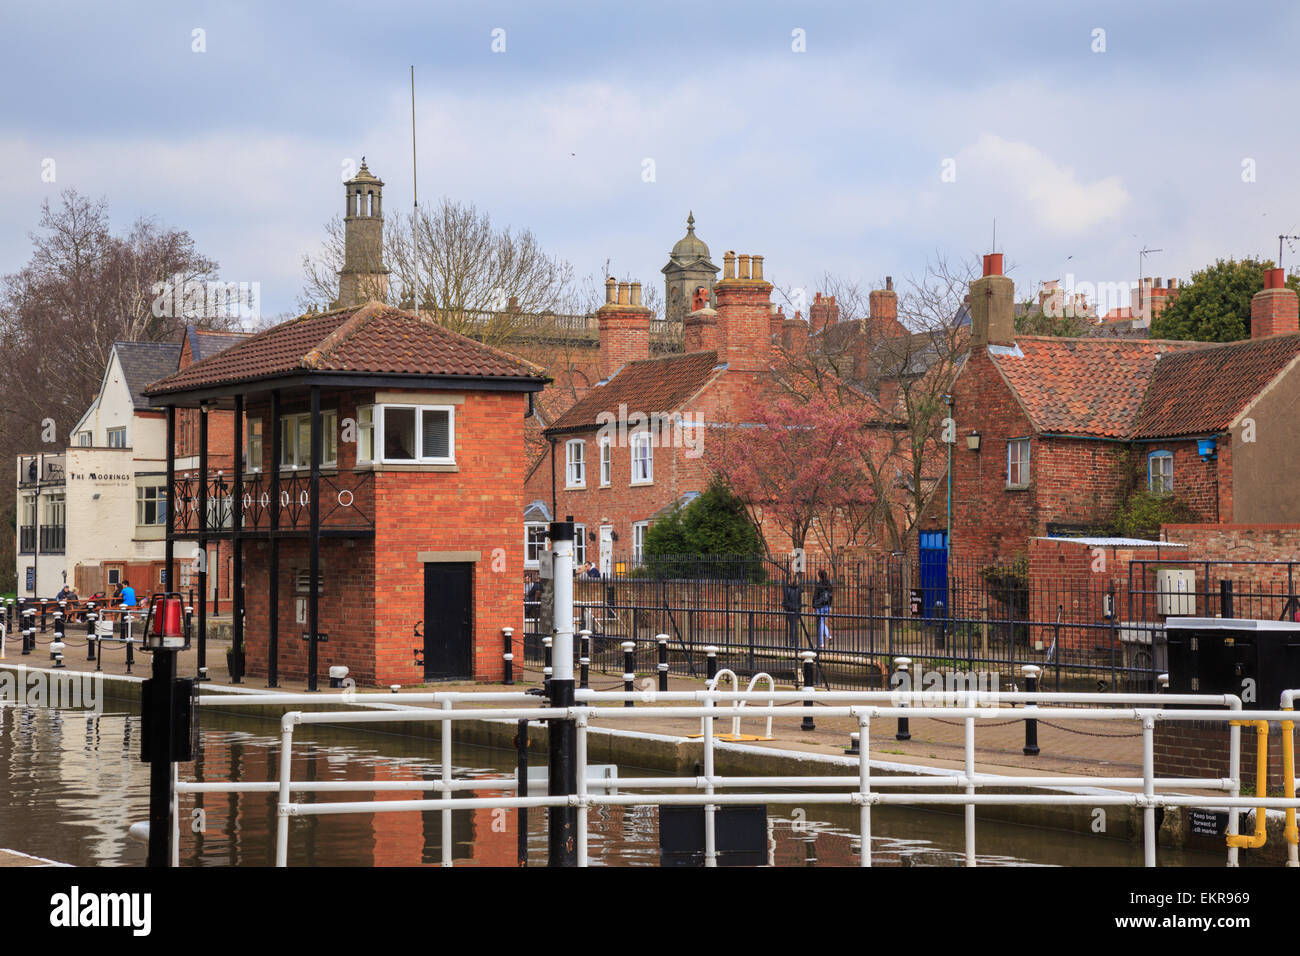 Kanal und Fluss Vertrauen Newark - On - Trent, Nottinghamshire, England UK Stockfoto